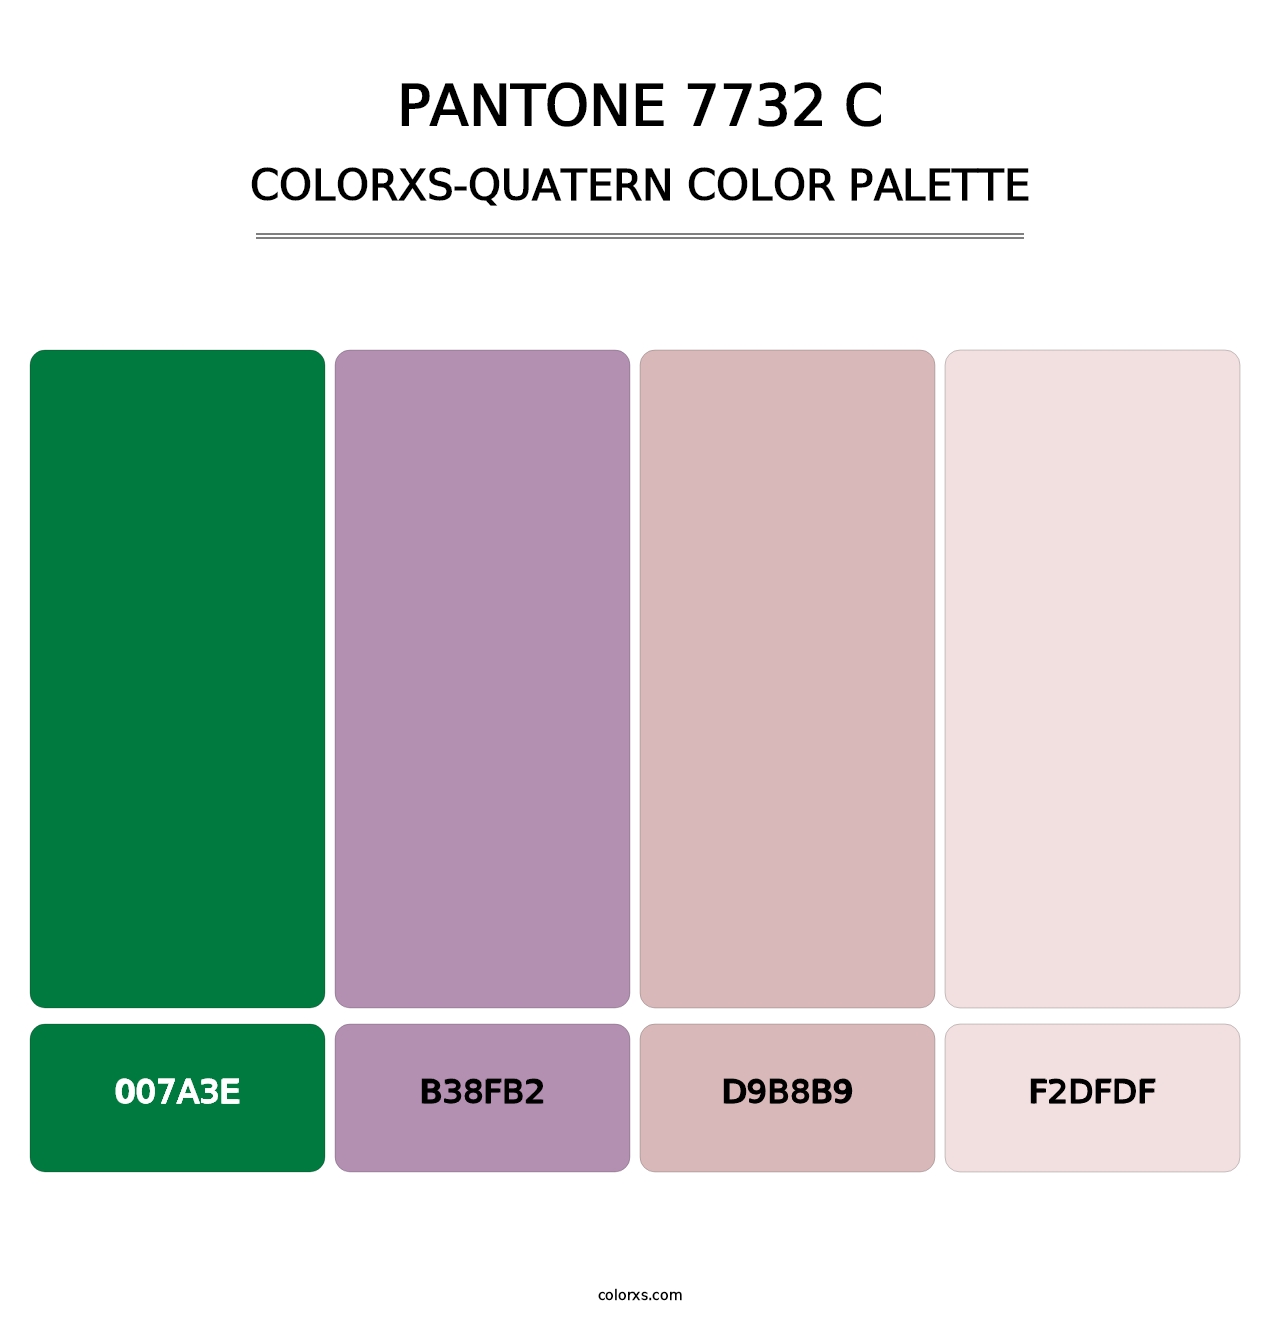 PANTONE 7732 C - Colorxs Quatern Palette